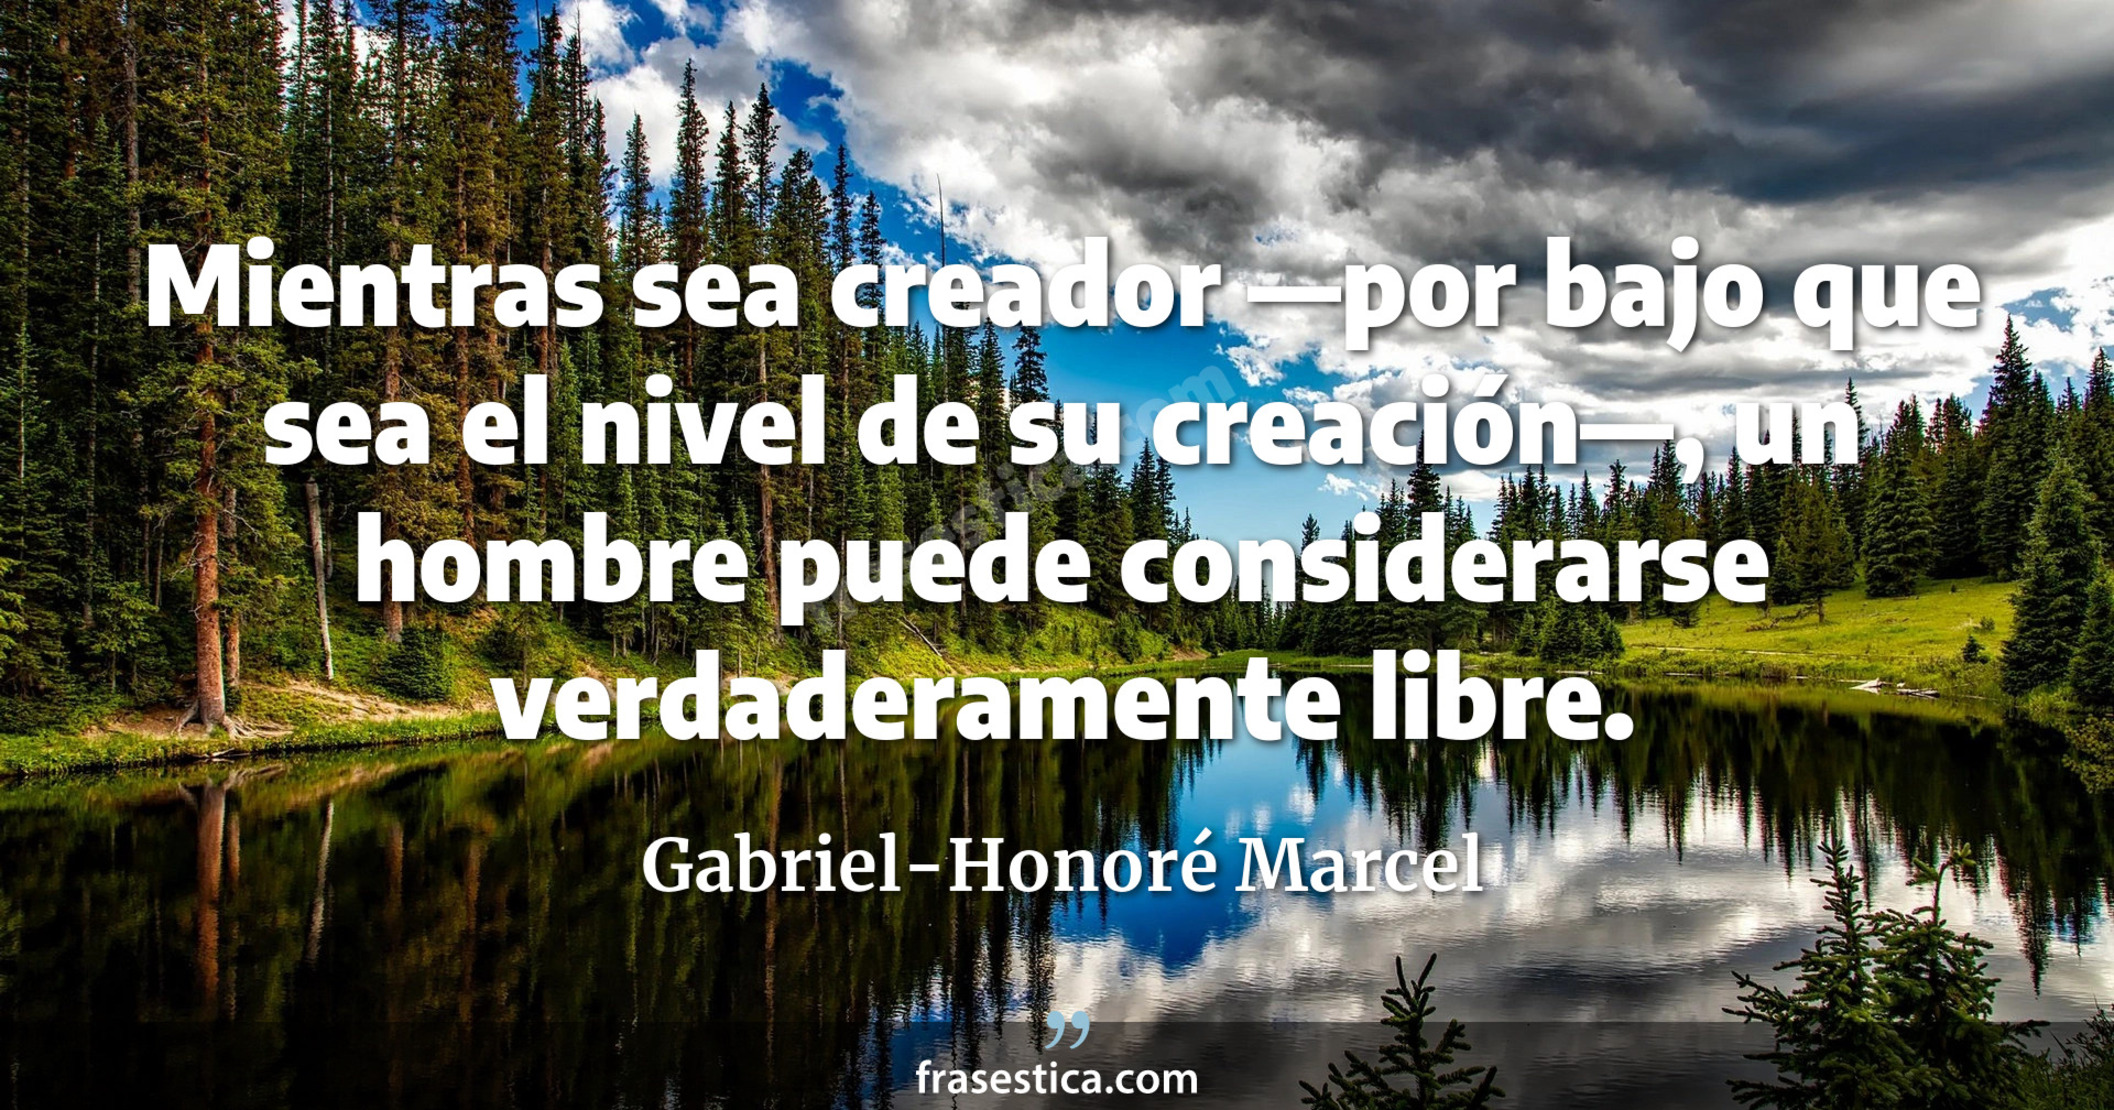 Mientras sea creador —por bajo que sea el nivel de su creación—, un hombre puede considerarse verdaderamente libre. - Gabriel-Honoré Marcel